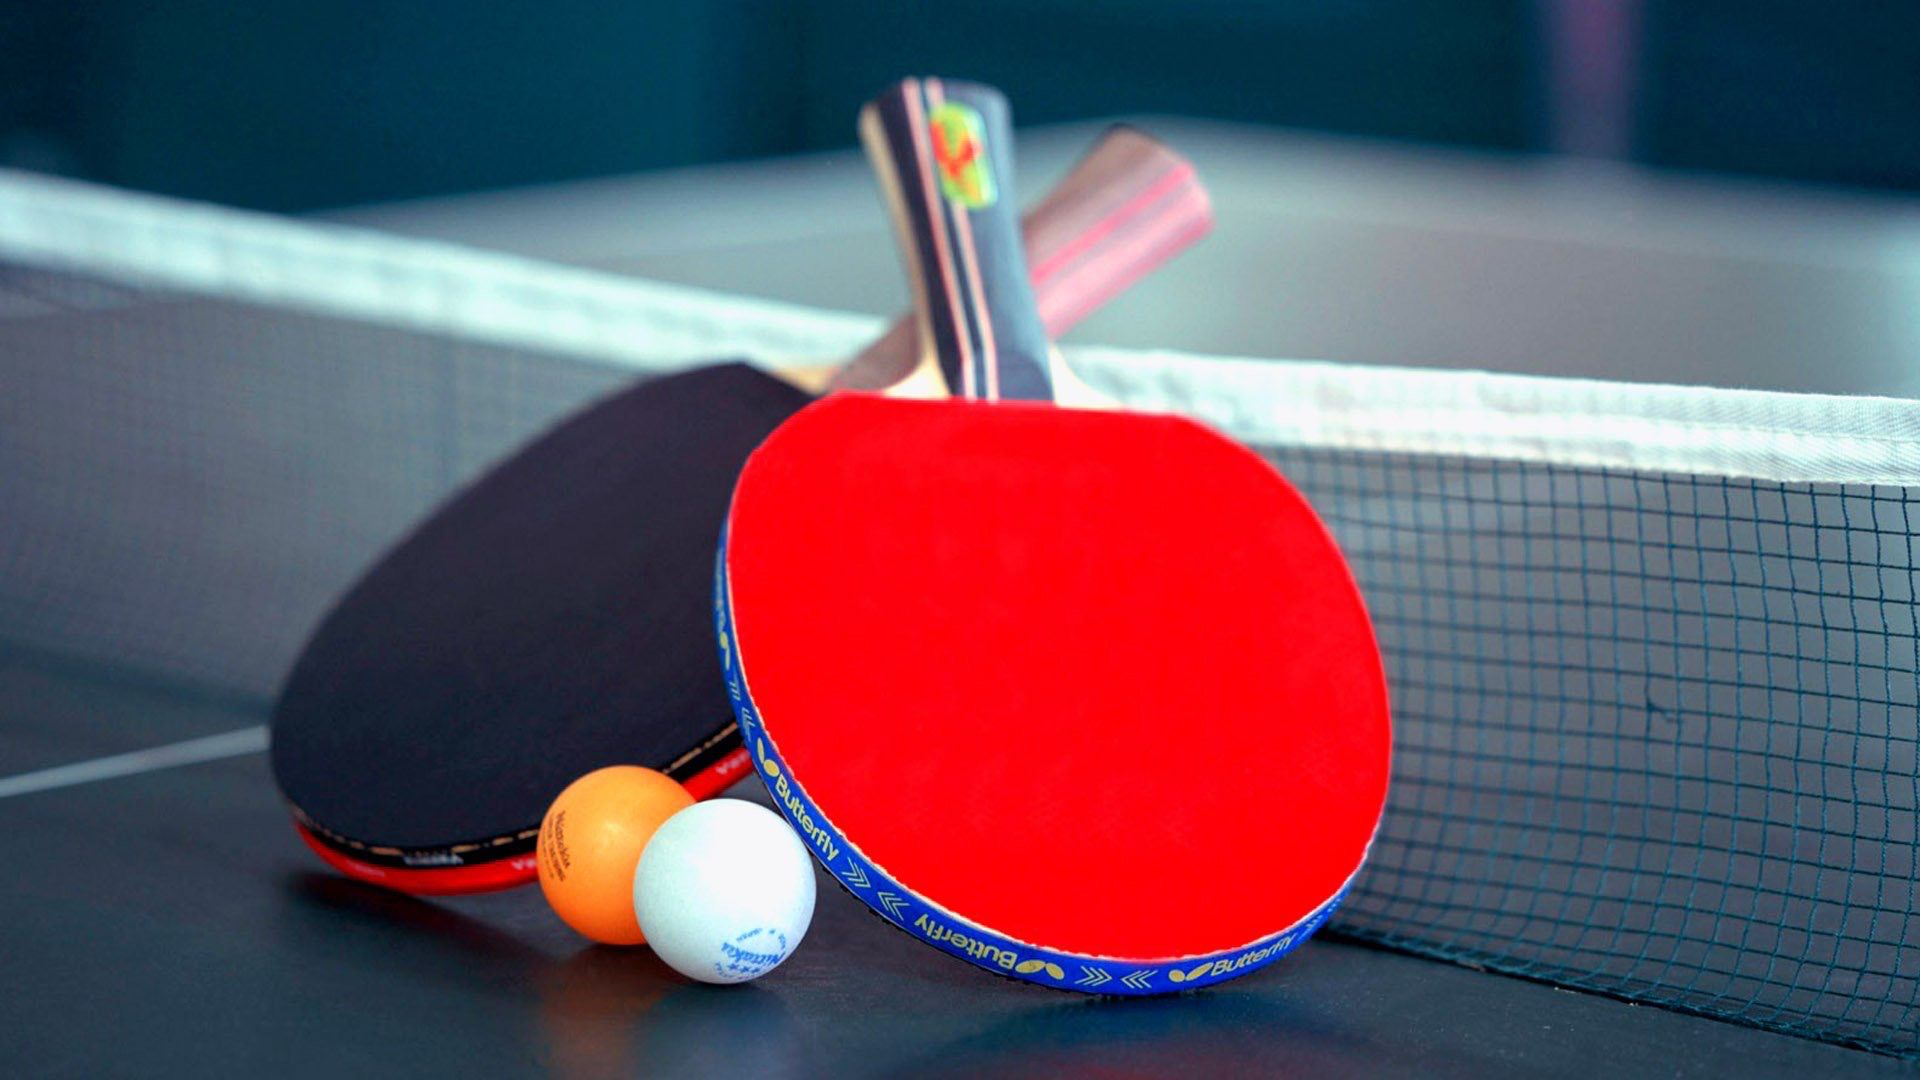 Des raquettes et une balle sur une table de ping pong.